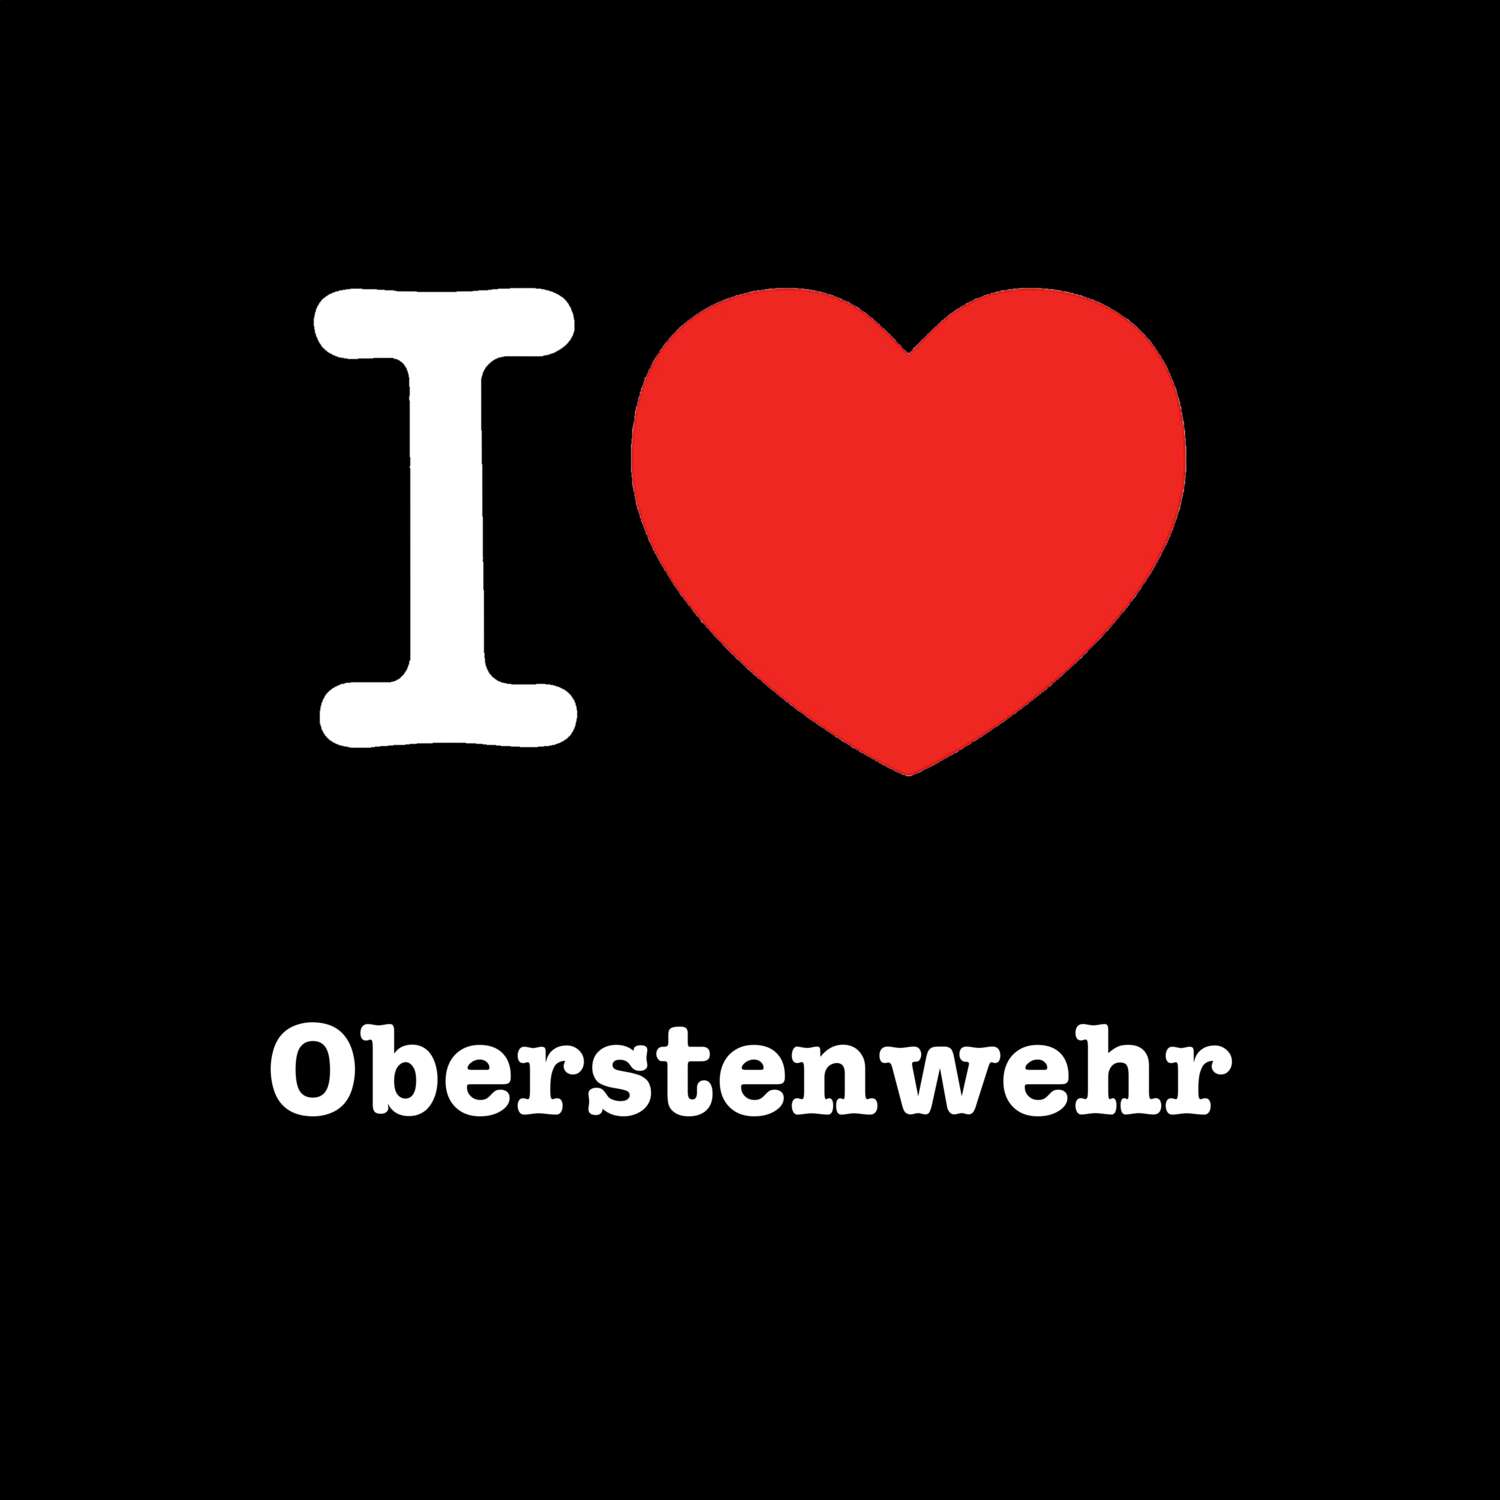 Oberstenwehr T-Shirt »I love«